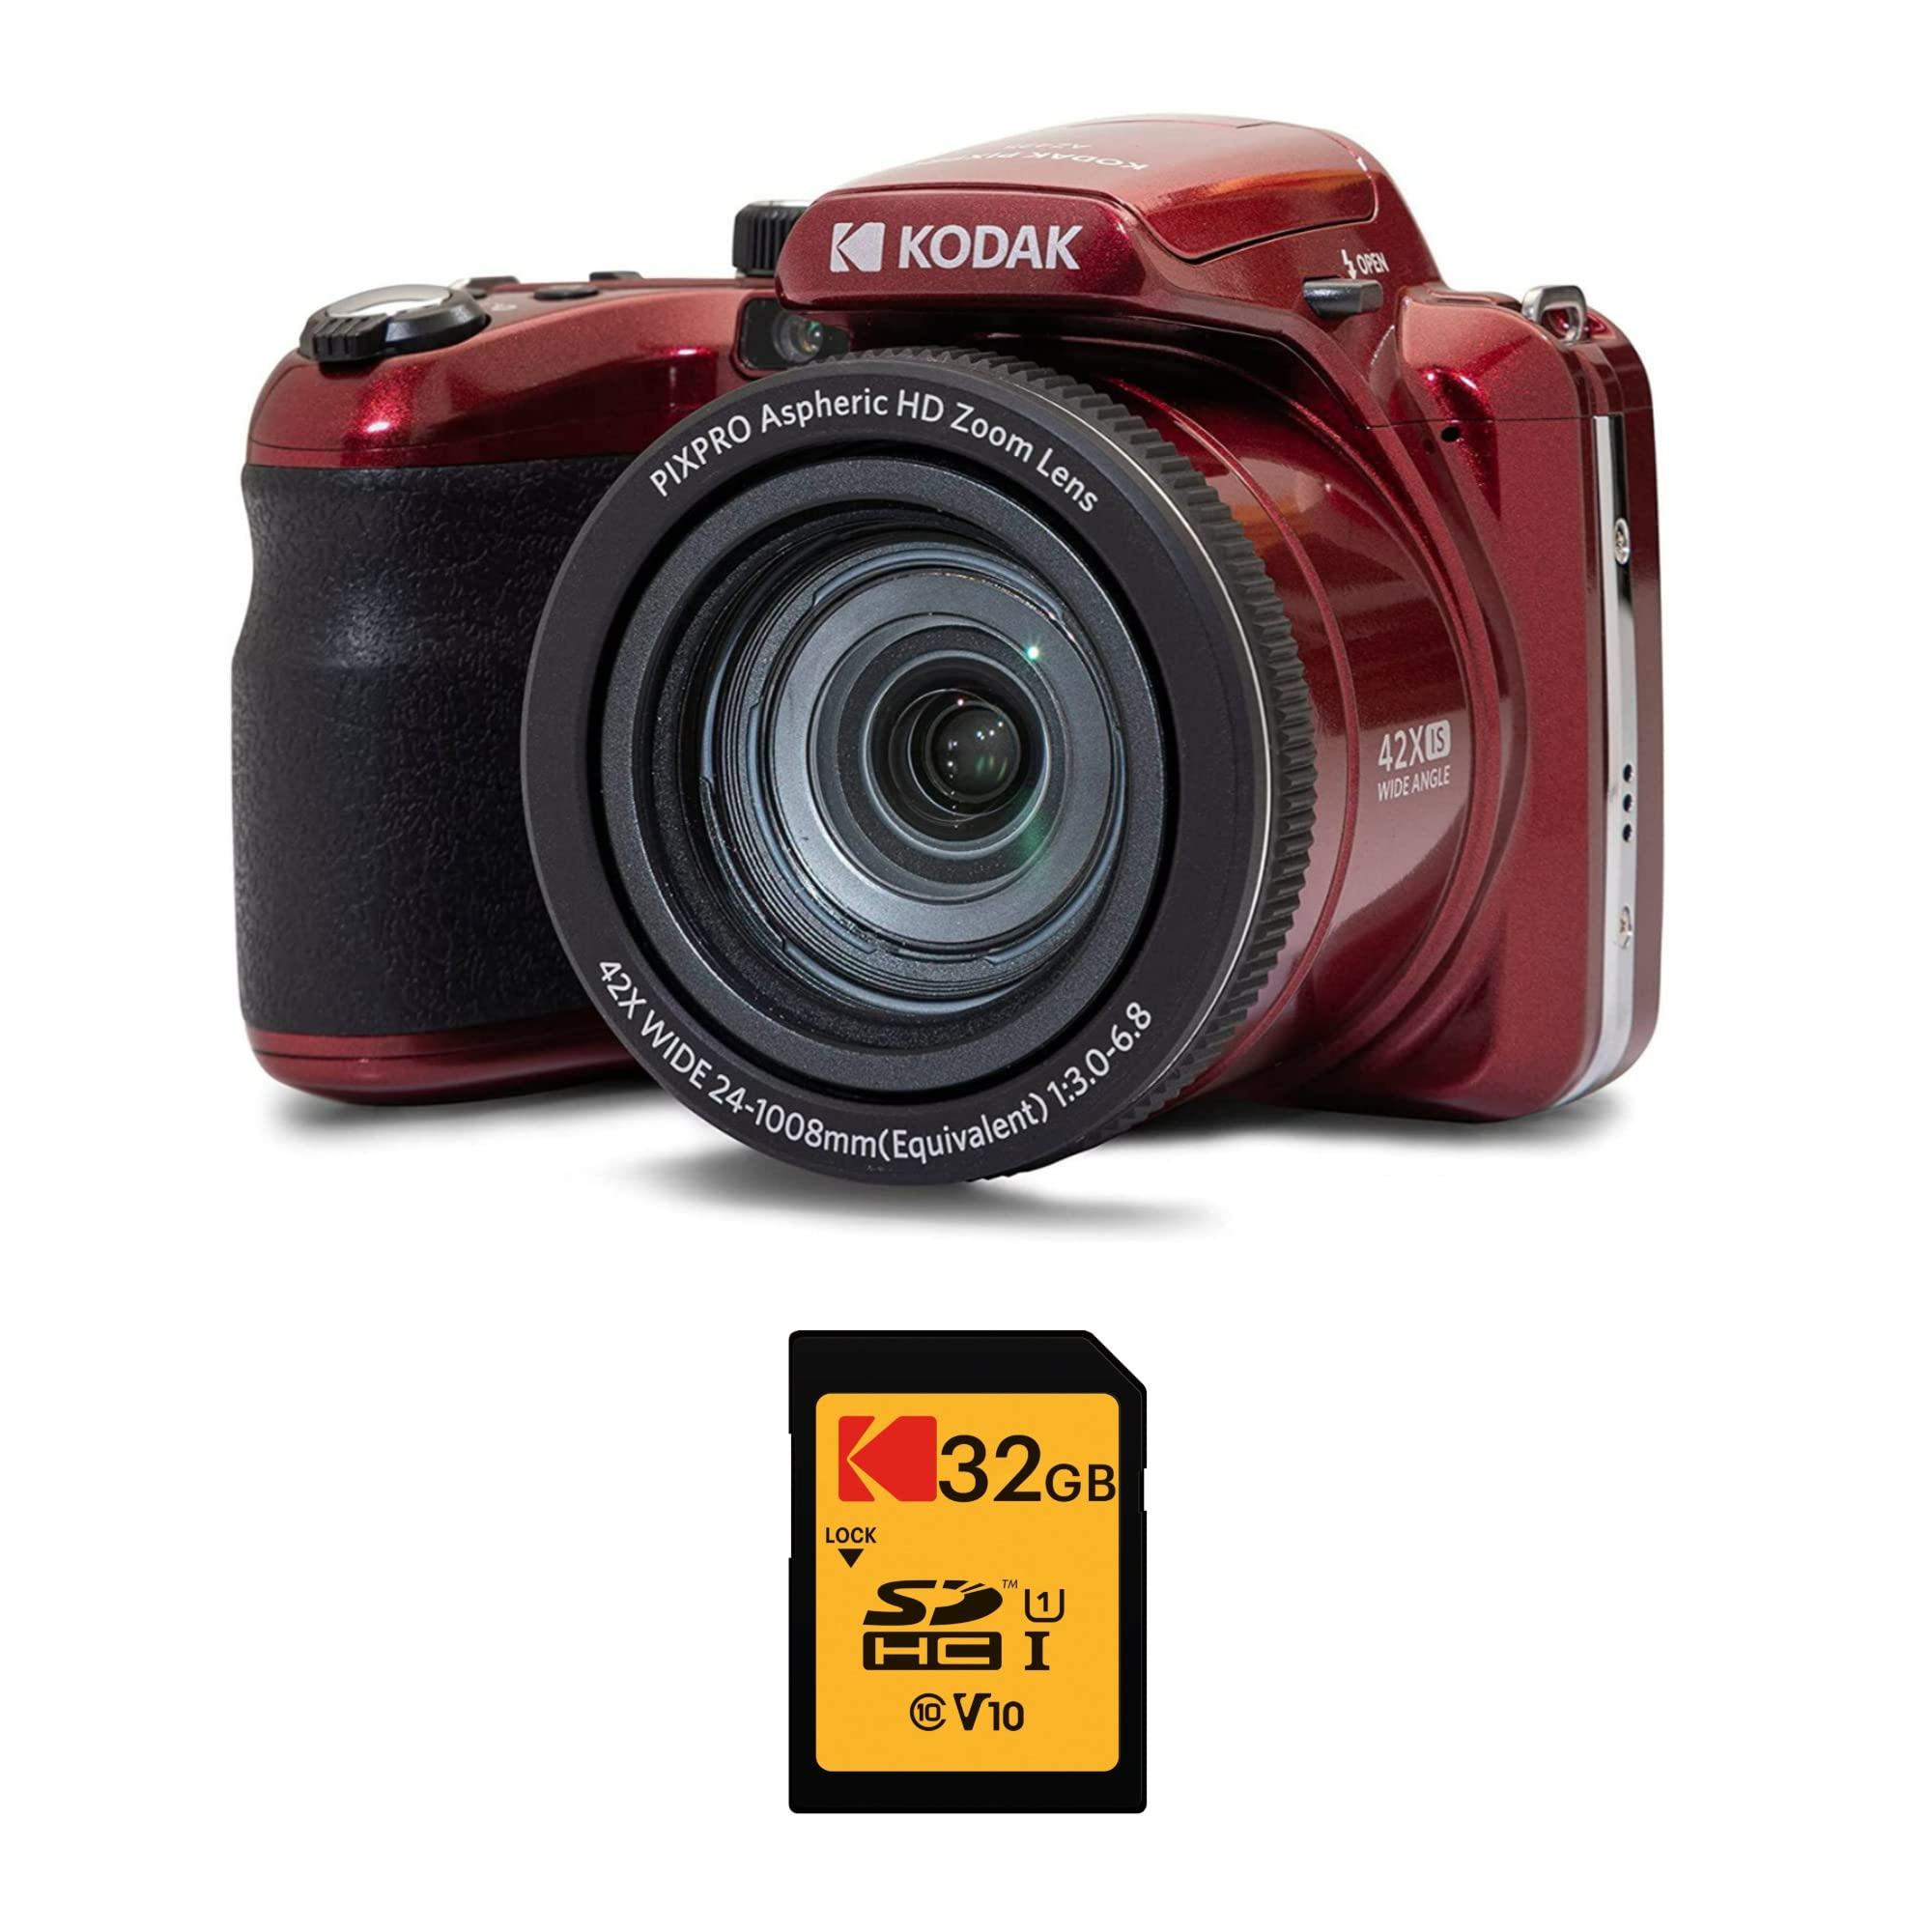 コダック KODAK PIXPRO AZ425 アストロズーム 20MP デジタルカメラ 42倍光学ズーム付き 赤 Kodak 32GB